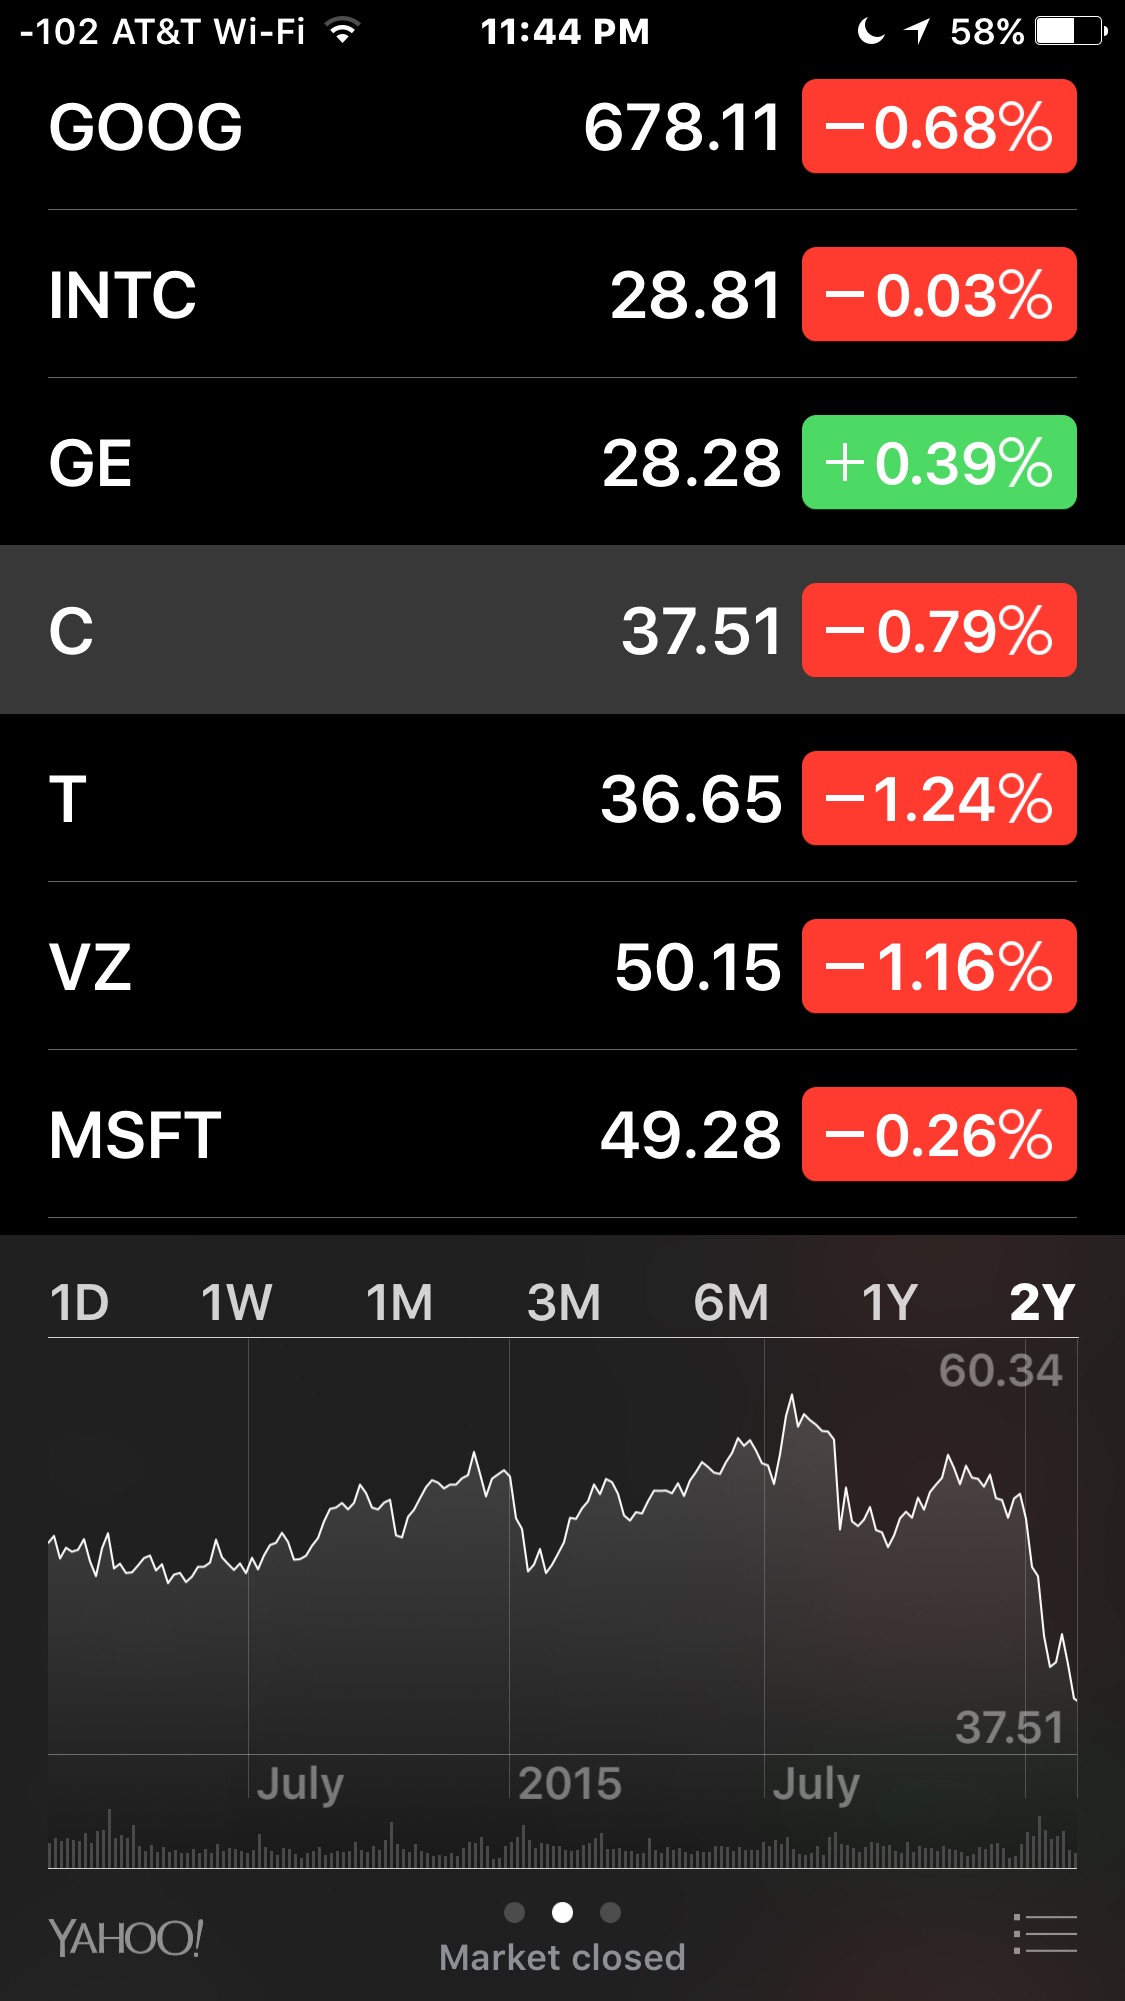 Vea el desempeño de las acciones y el mercado a largo plazo en la aplicación iPhone Stocks